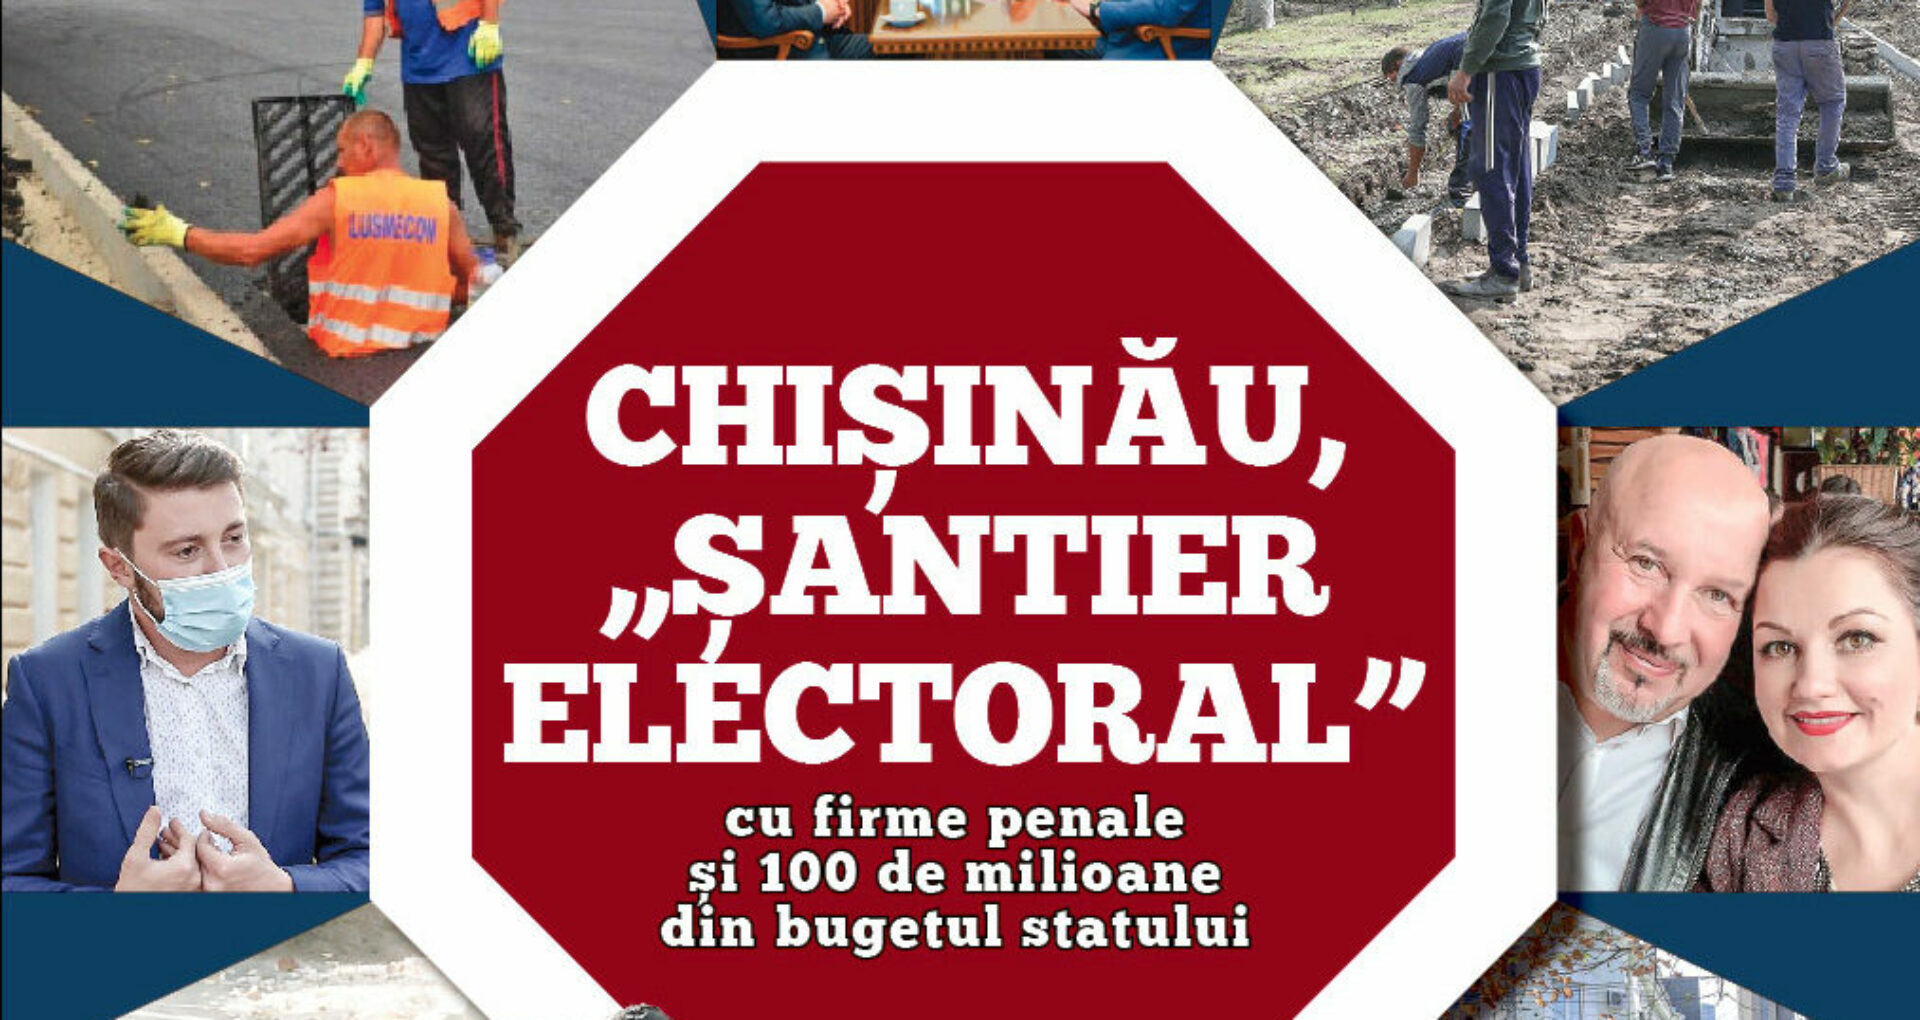 VIDEO/ Chișinău, „șantier electoral” cu firme penale și 100 de milioane din bugetul statului